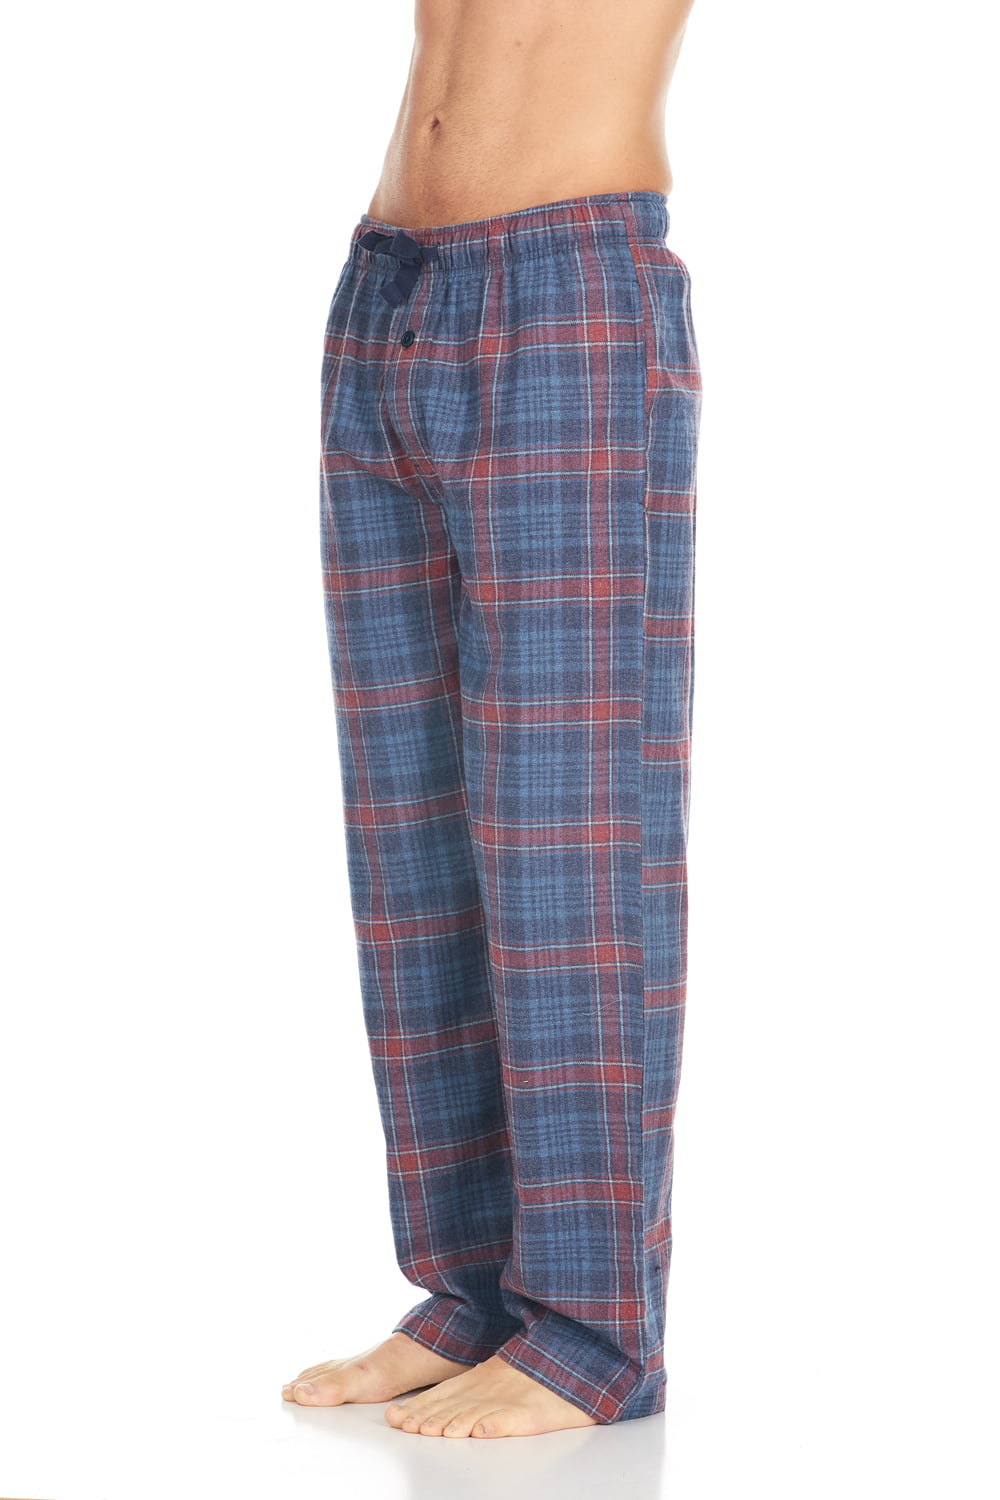 Men's Cotton Super-Soft Flannel Plaid Pajama Pants/Lounge Bottoms with ...